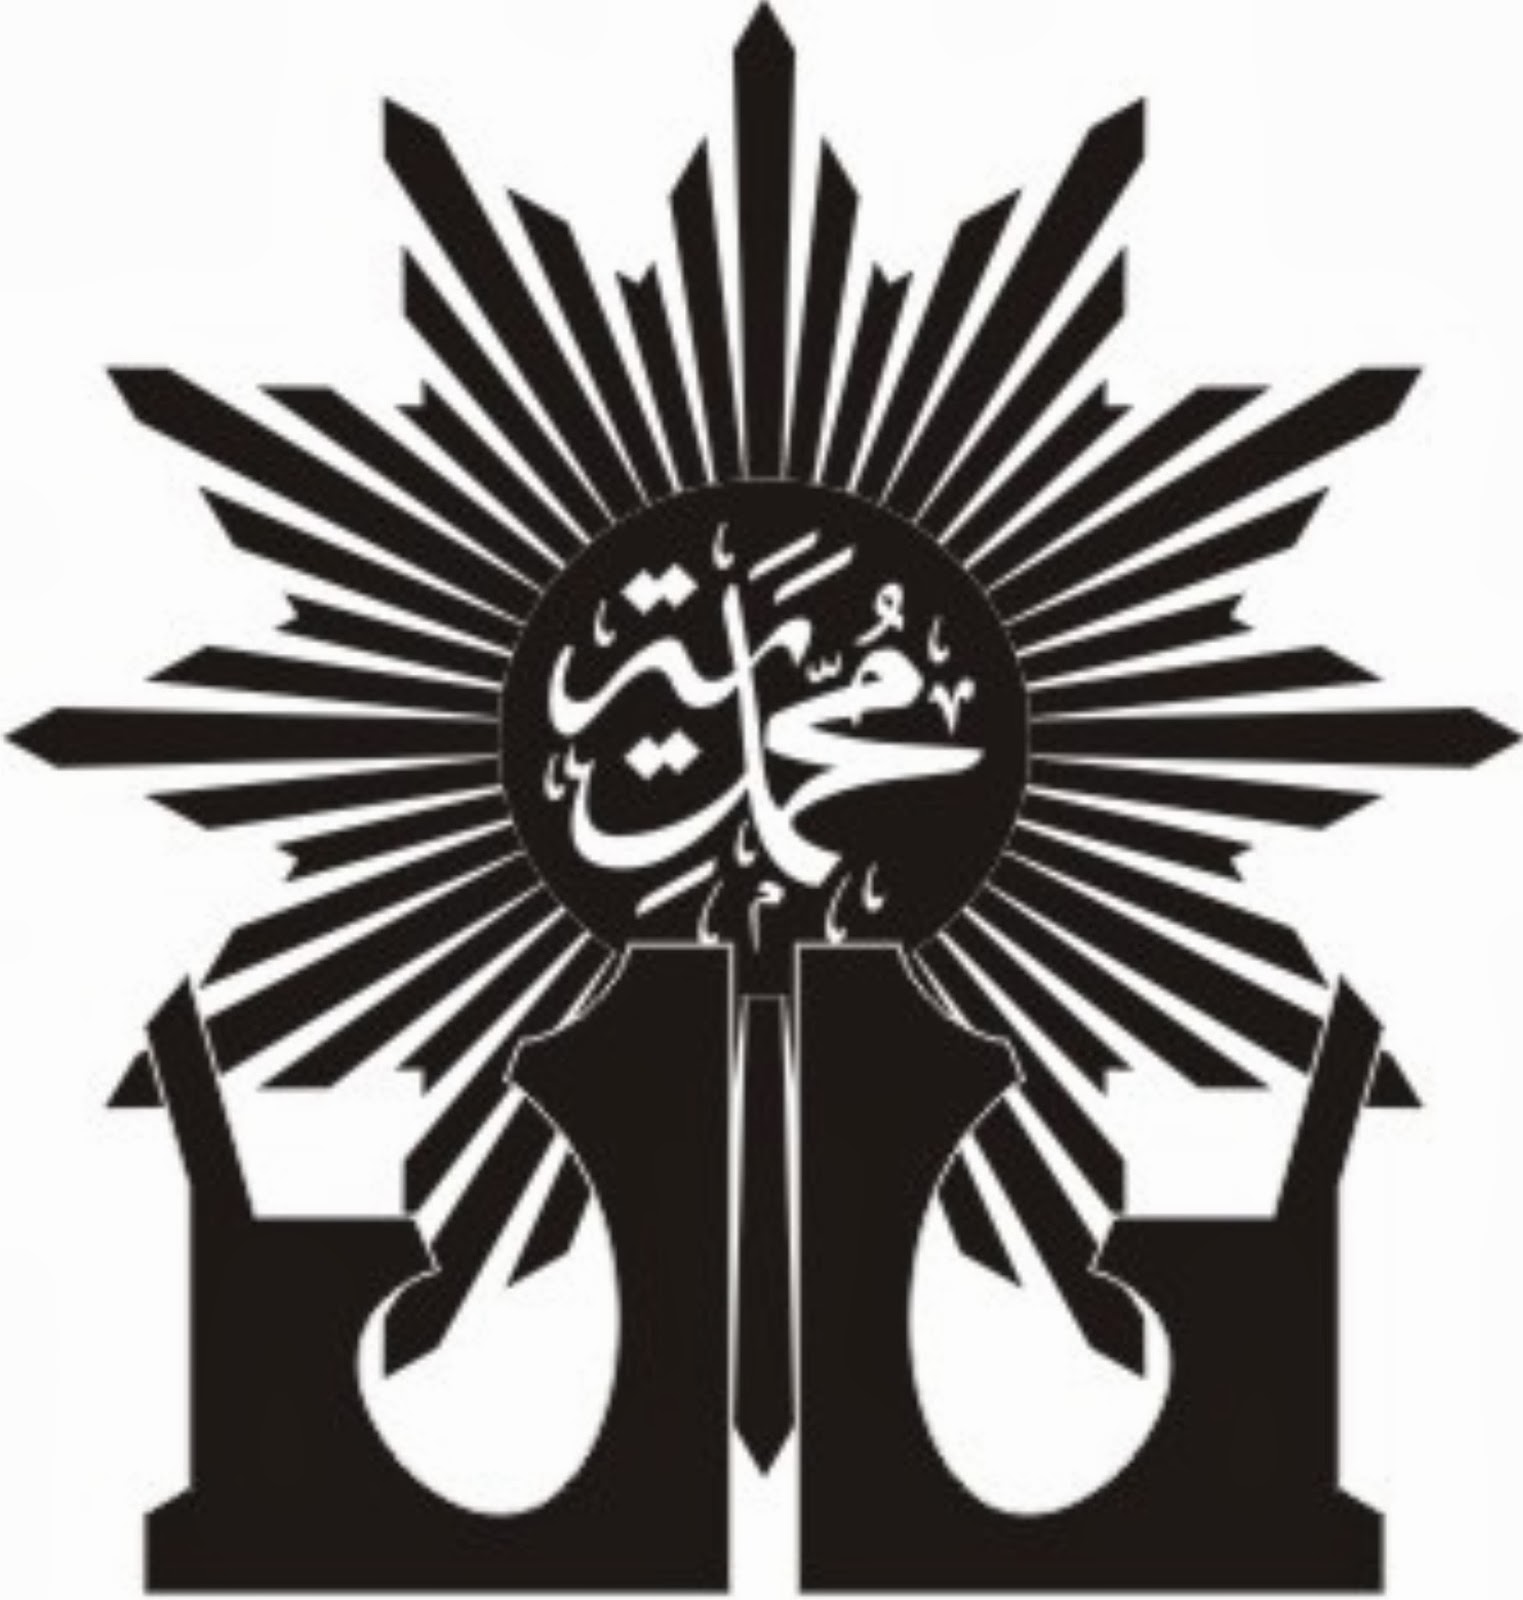 Zhaliha: Kumpulan LOGO AUM dan ORTOM Muhammadiyah